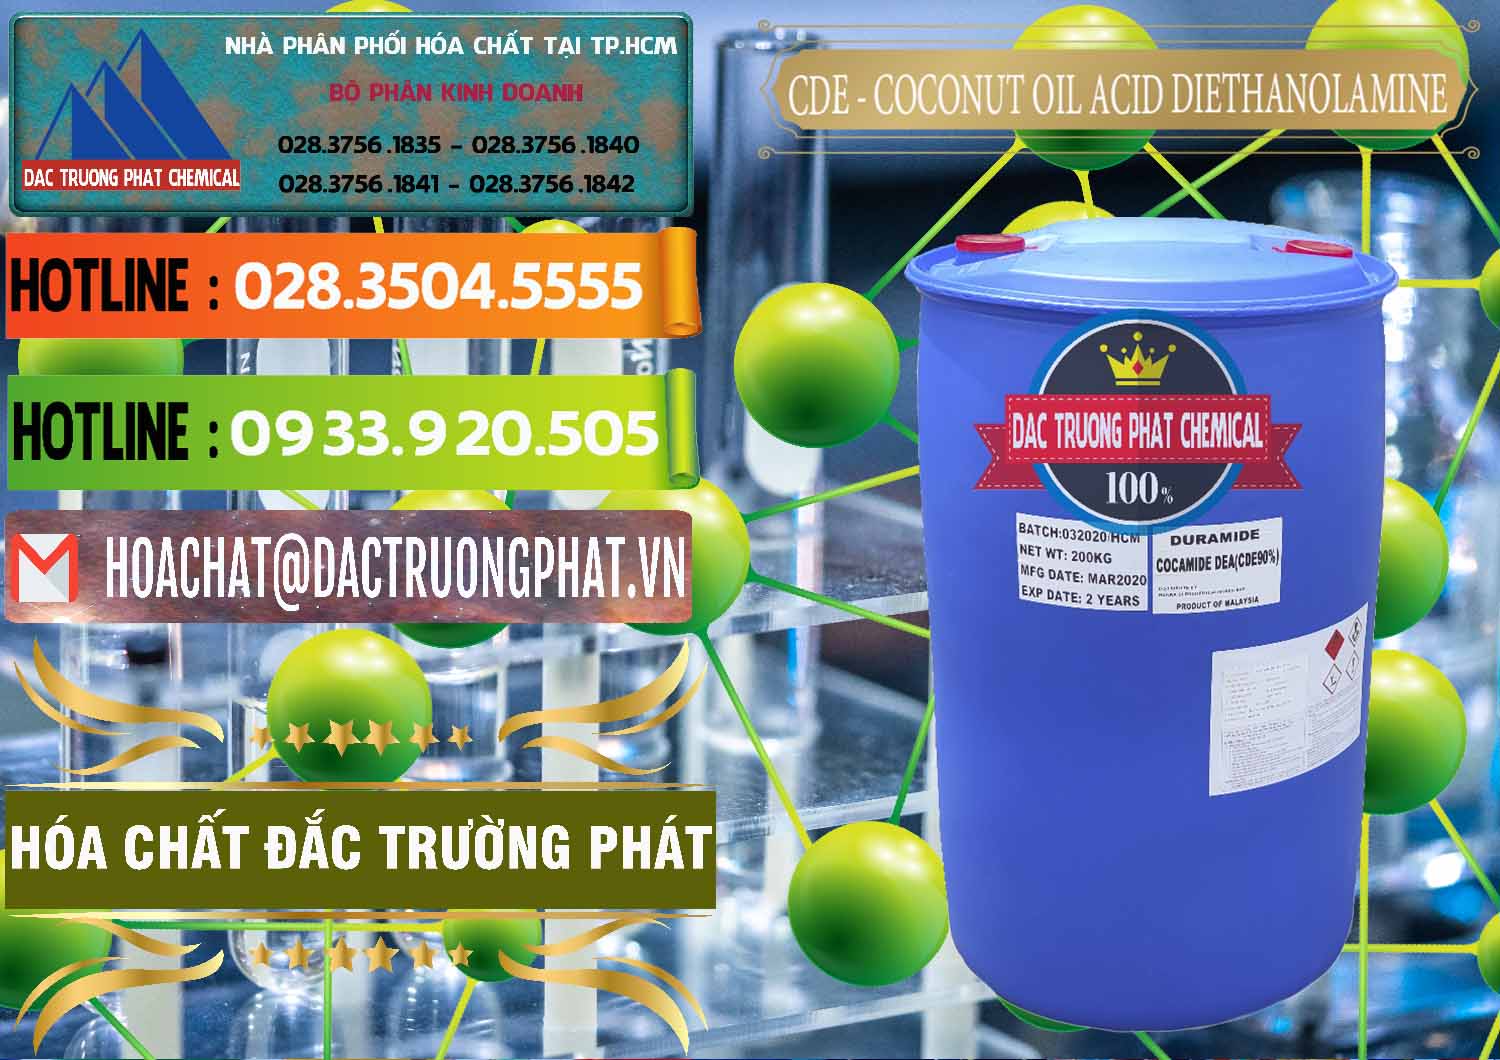 Cty chuyên bán & cung cấp CDE - Coconut Oil Acid Diethanolamine Mã Lai Malaysia - 0311 - Đơn vị cung cấp & phân phối hóa chất tại TP.HCM - cungcaphoachat.com.vn